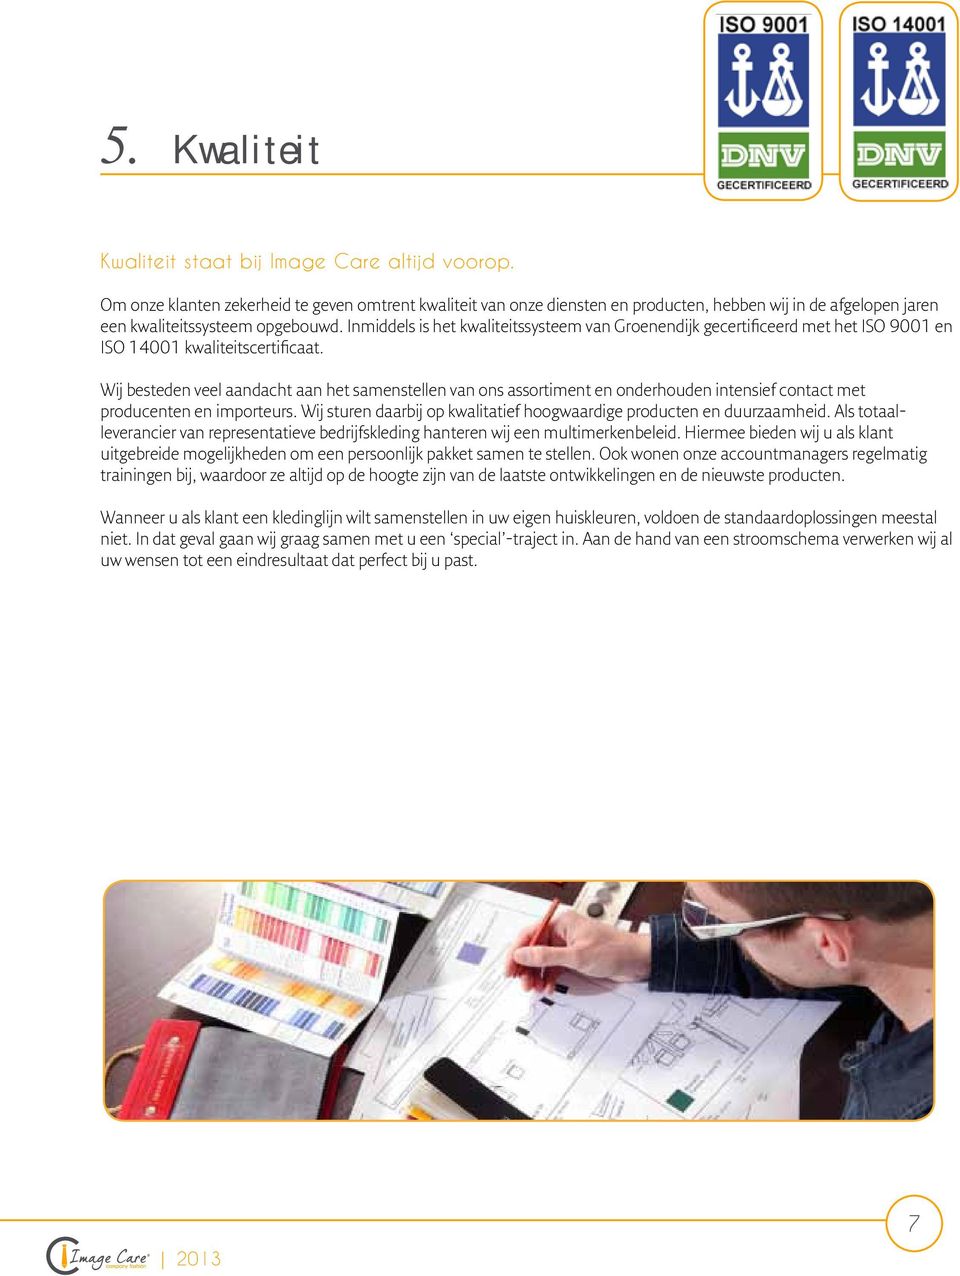 Inmiddels is het kwaliteitssysteem van Groenendijk gecertificeerd met het ISO 9001 en ISO 14001 kwaliteitscertificaat.